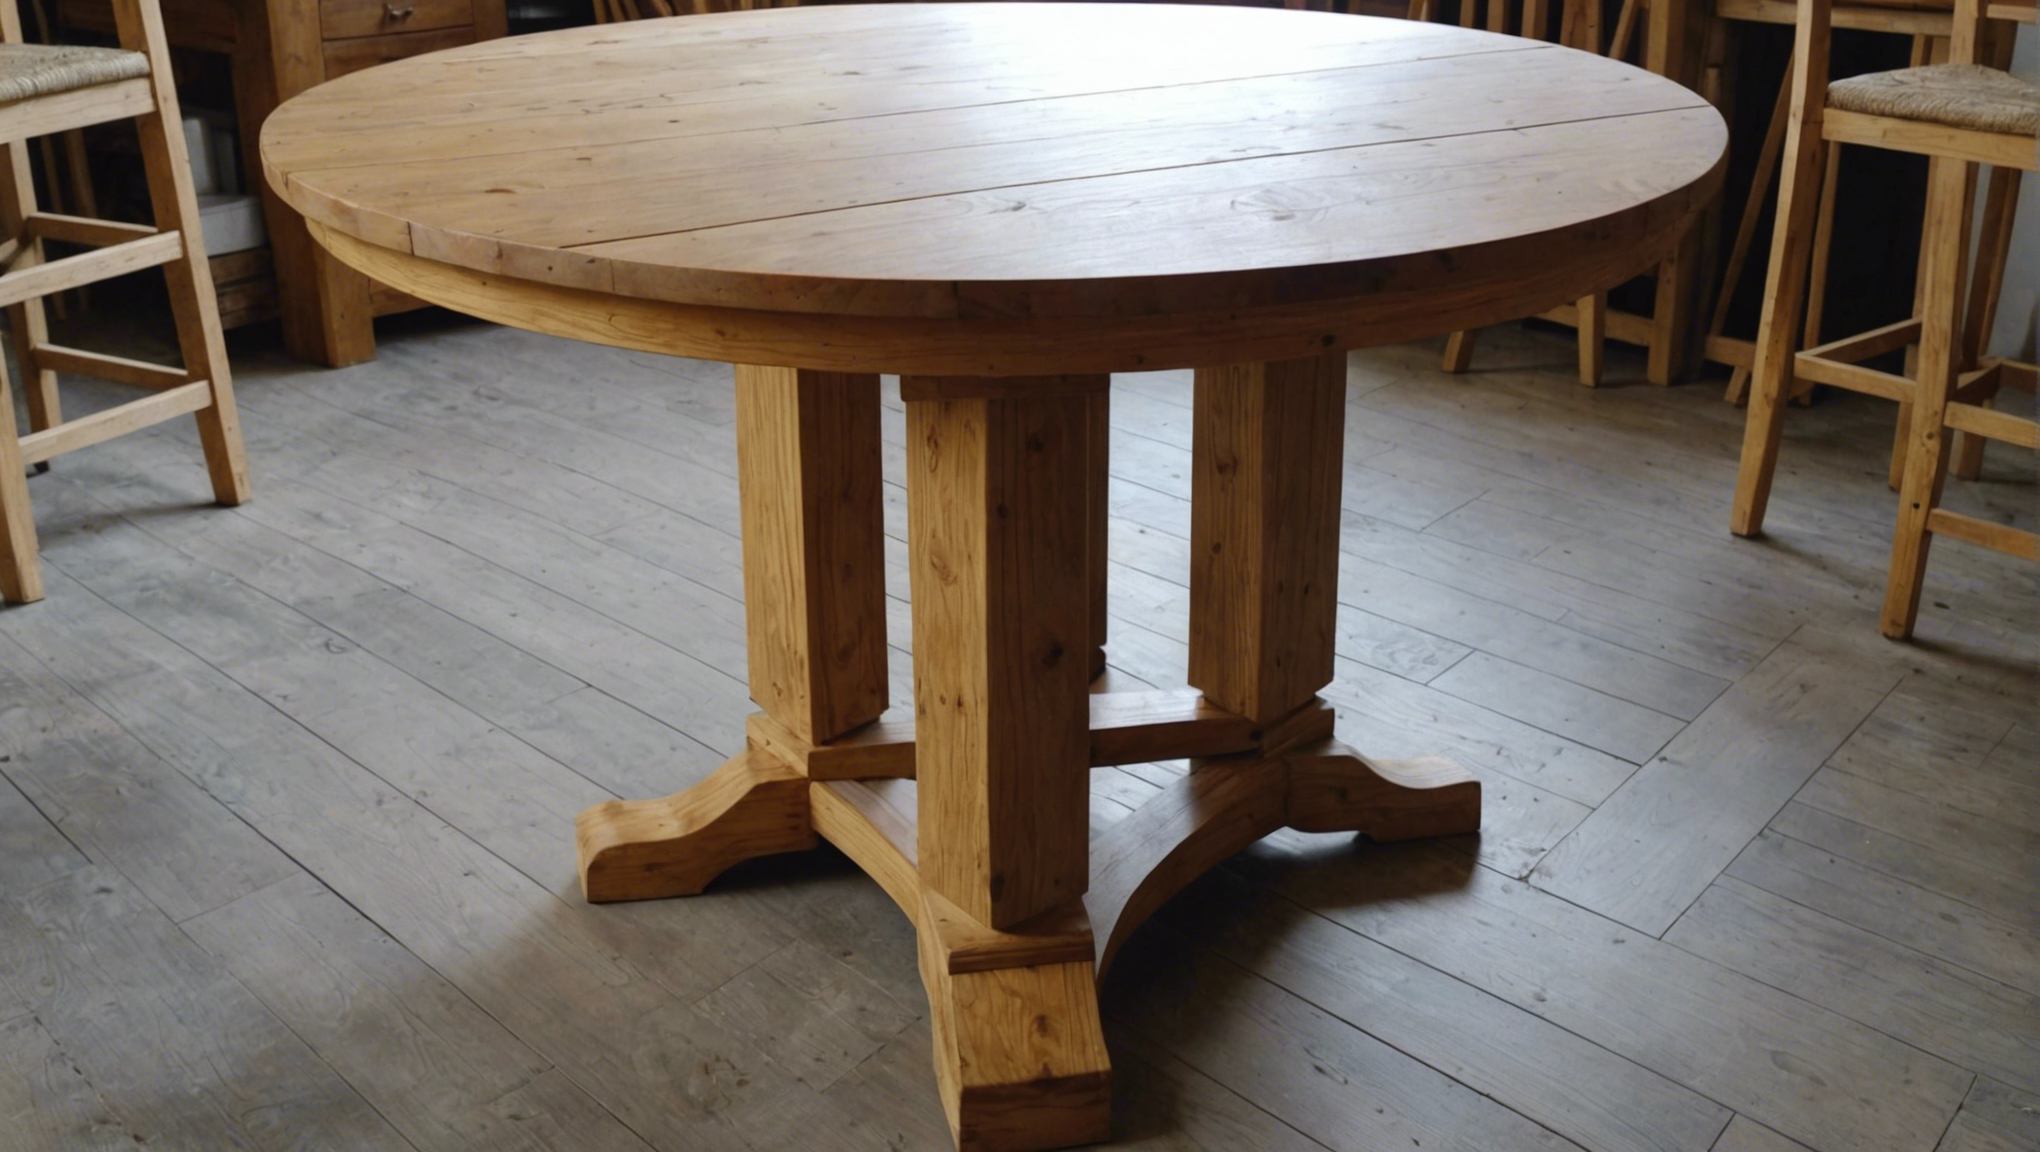 découvrez les étapes de la rénovation pour redonner vie à une table en bois dans cet article pratique.